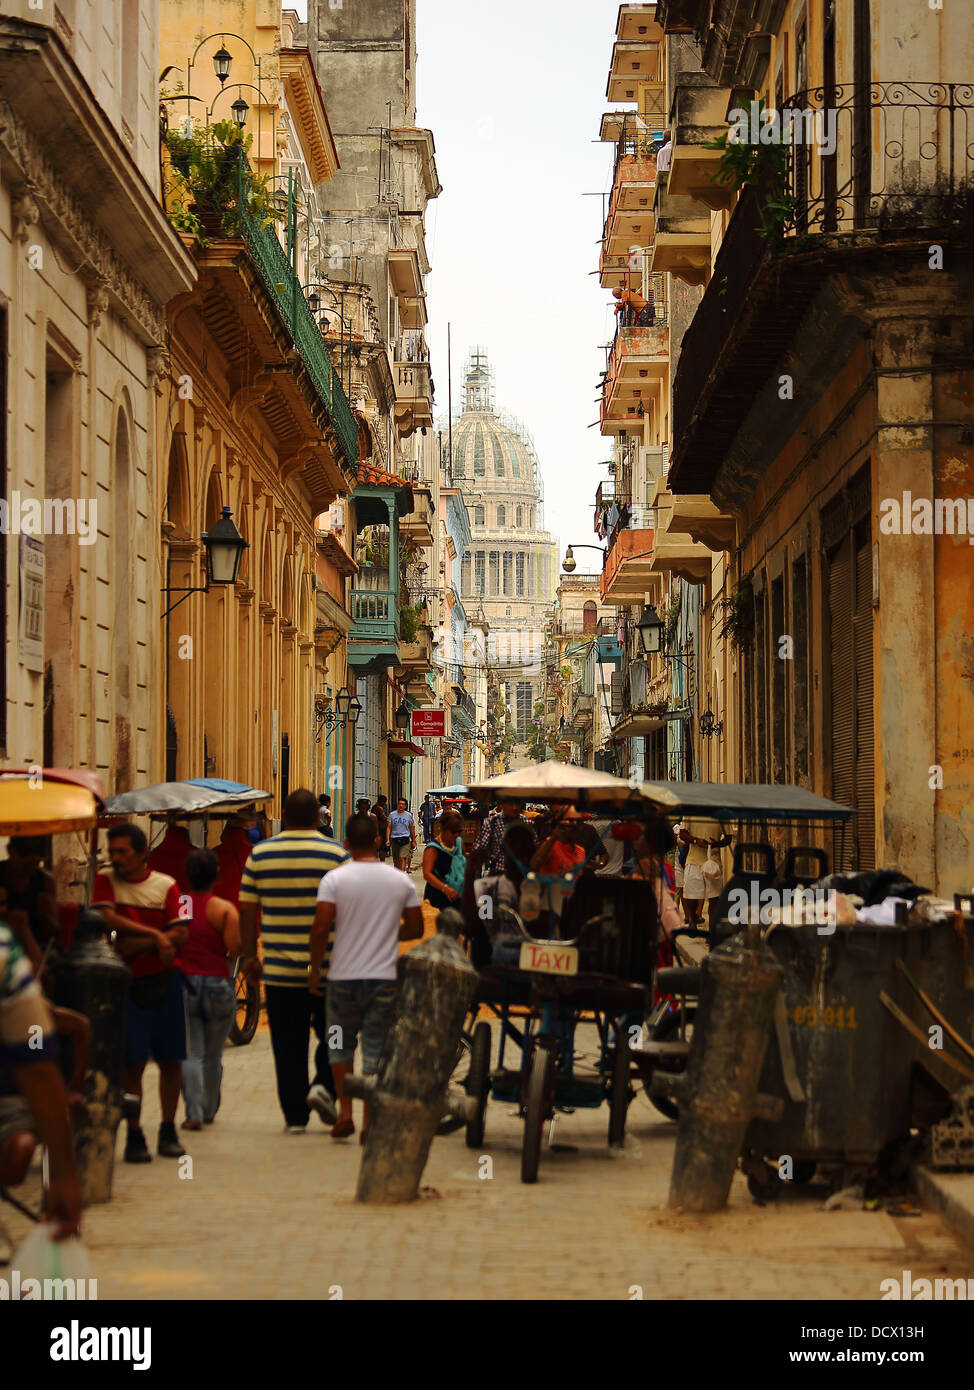 Caraibi Havana Cuba street scene raffiguranti persone locali, edifici, musei e i modi di trasporto Foto Stock